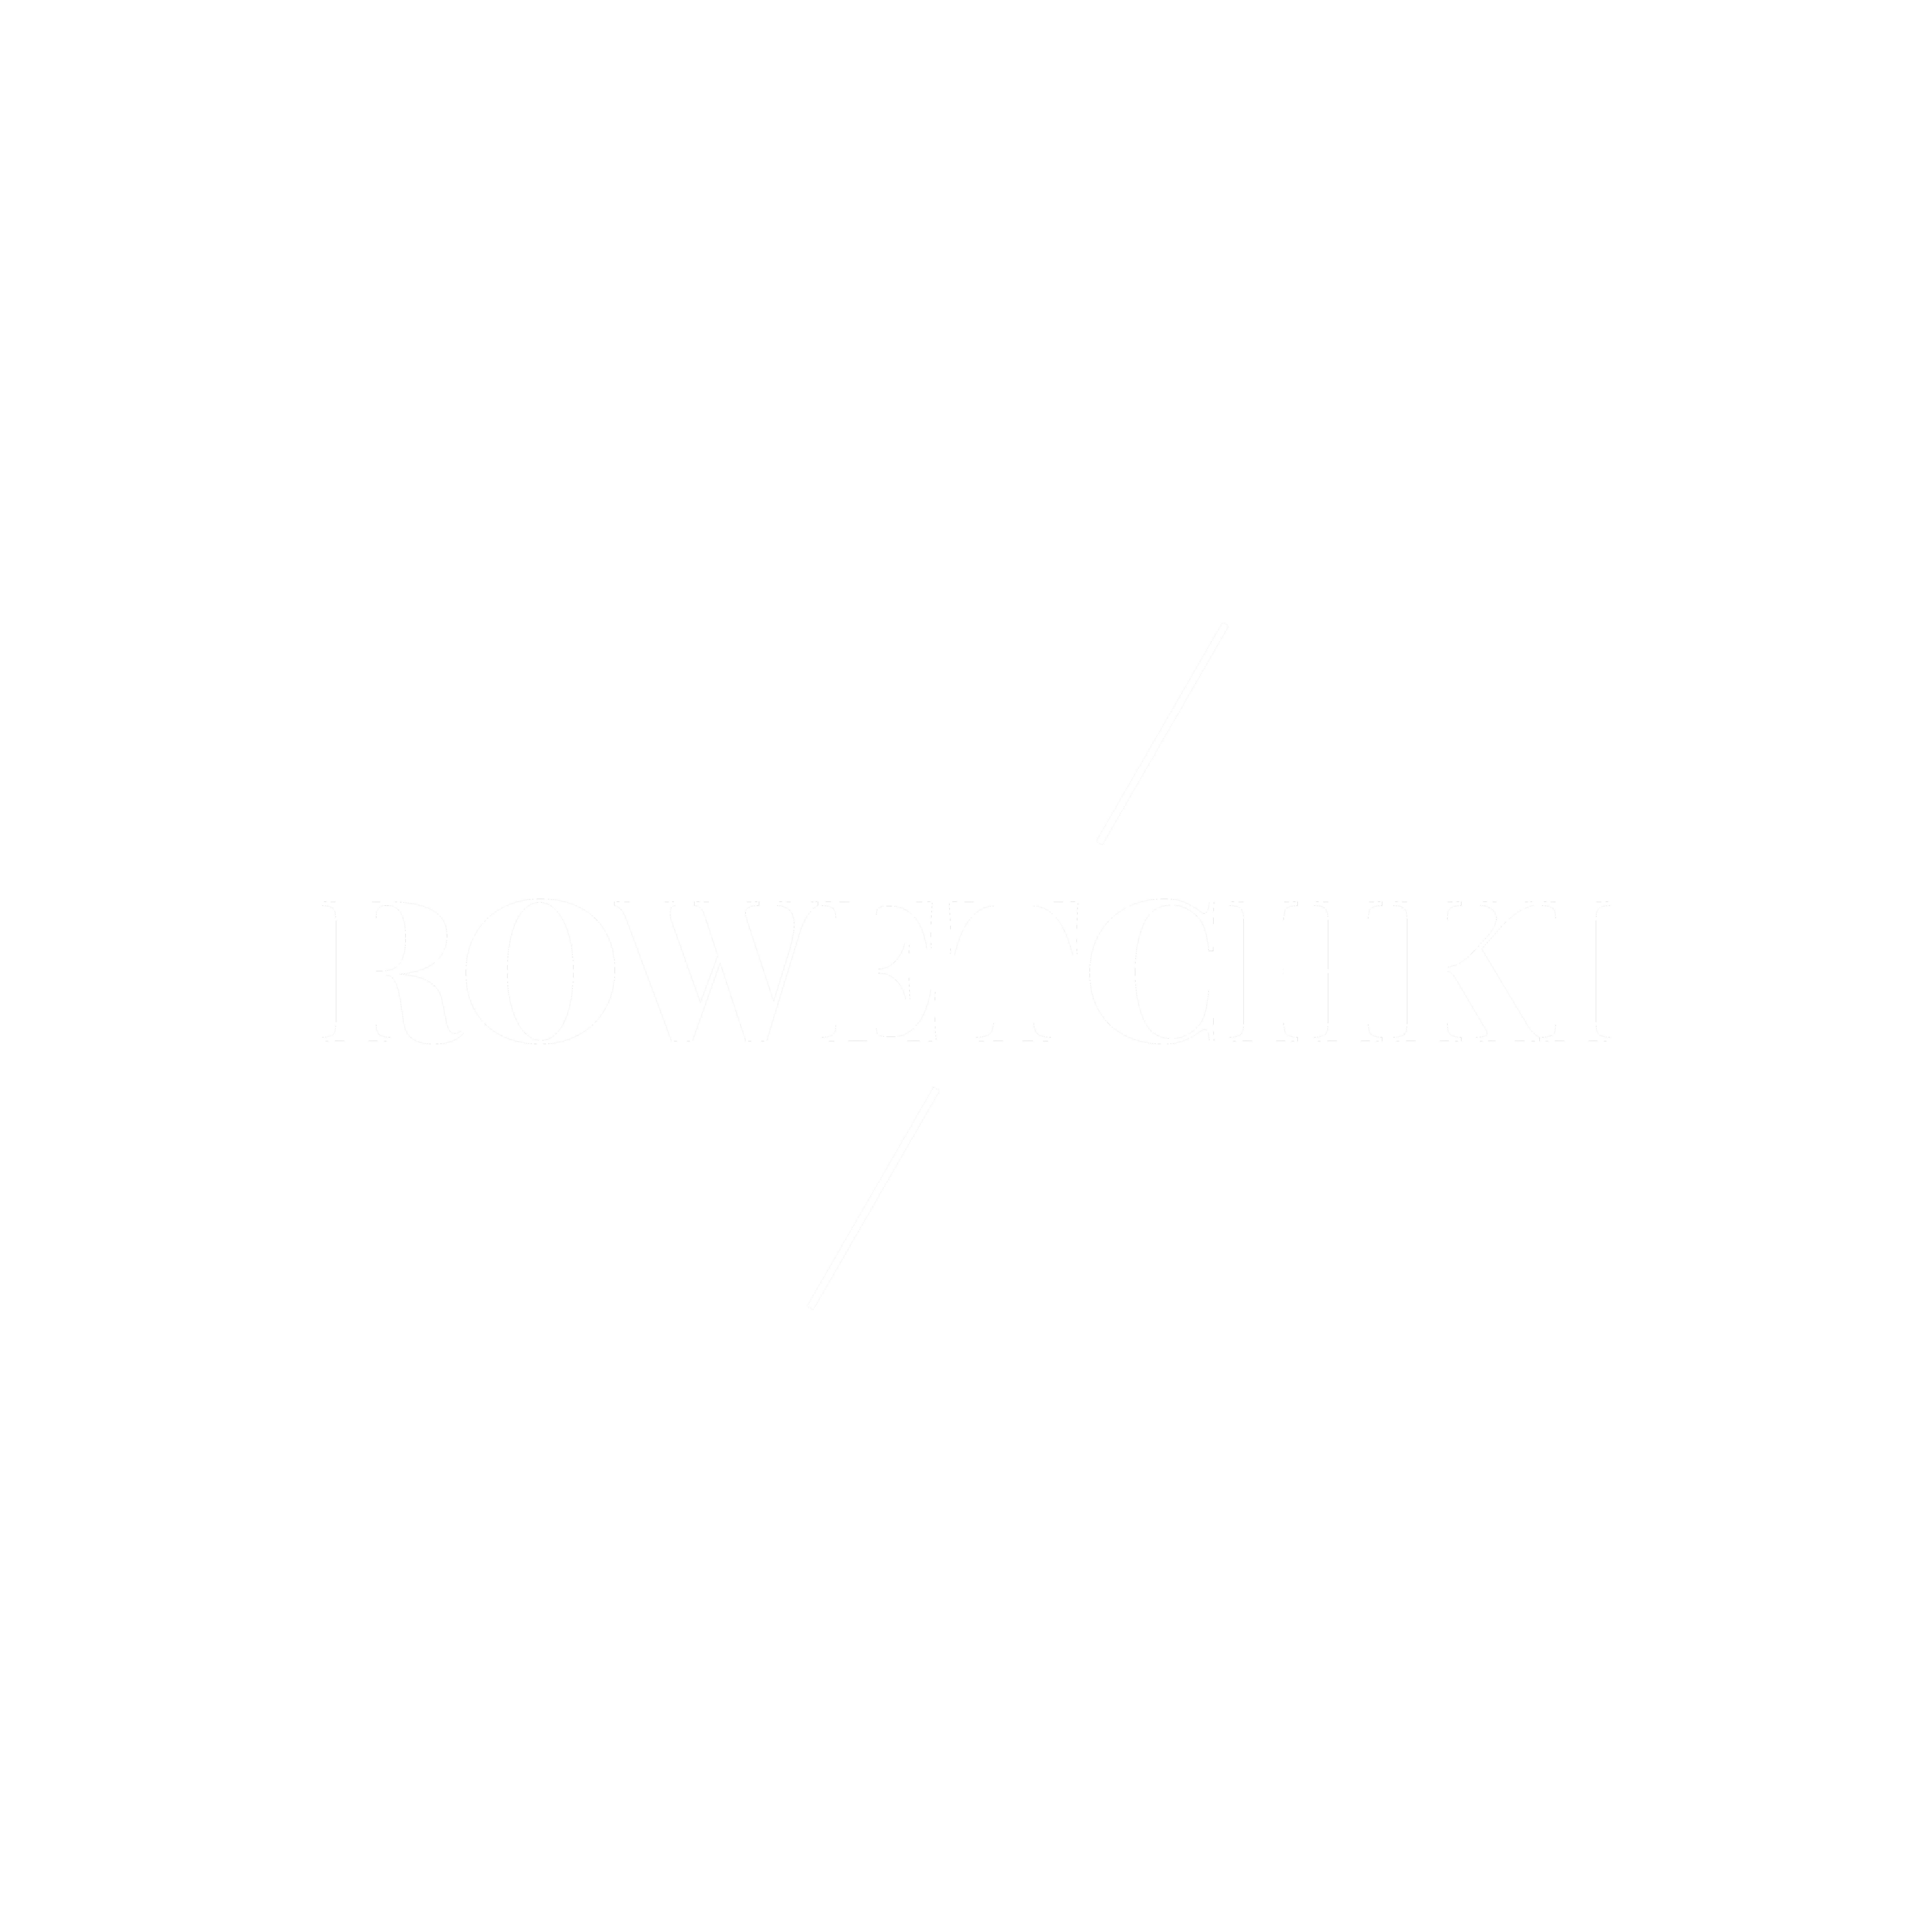 Rowetchki